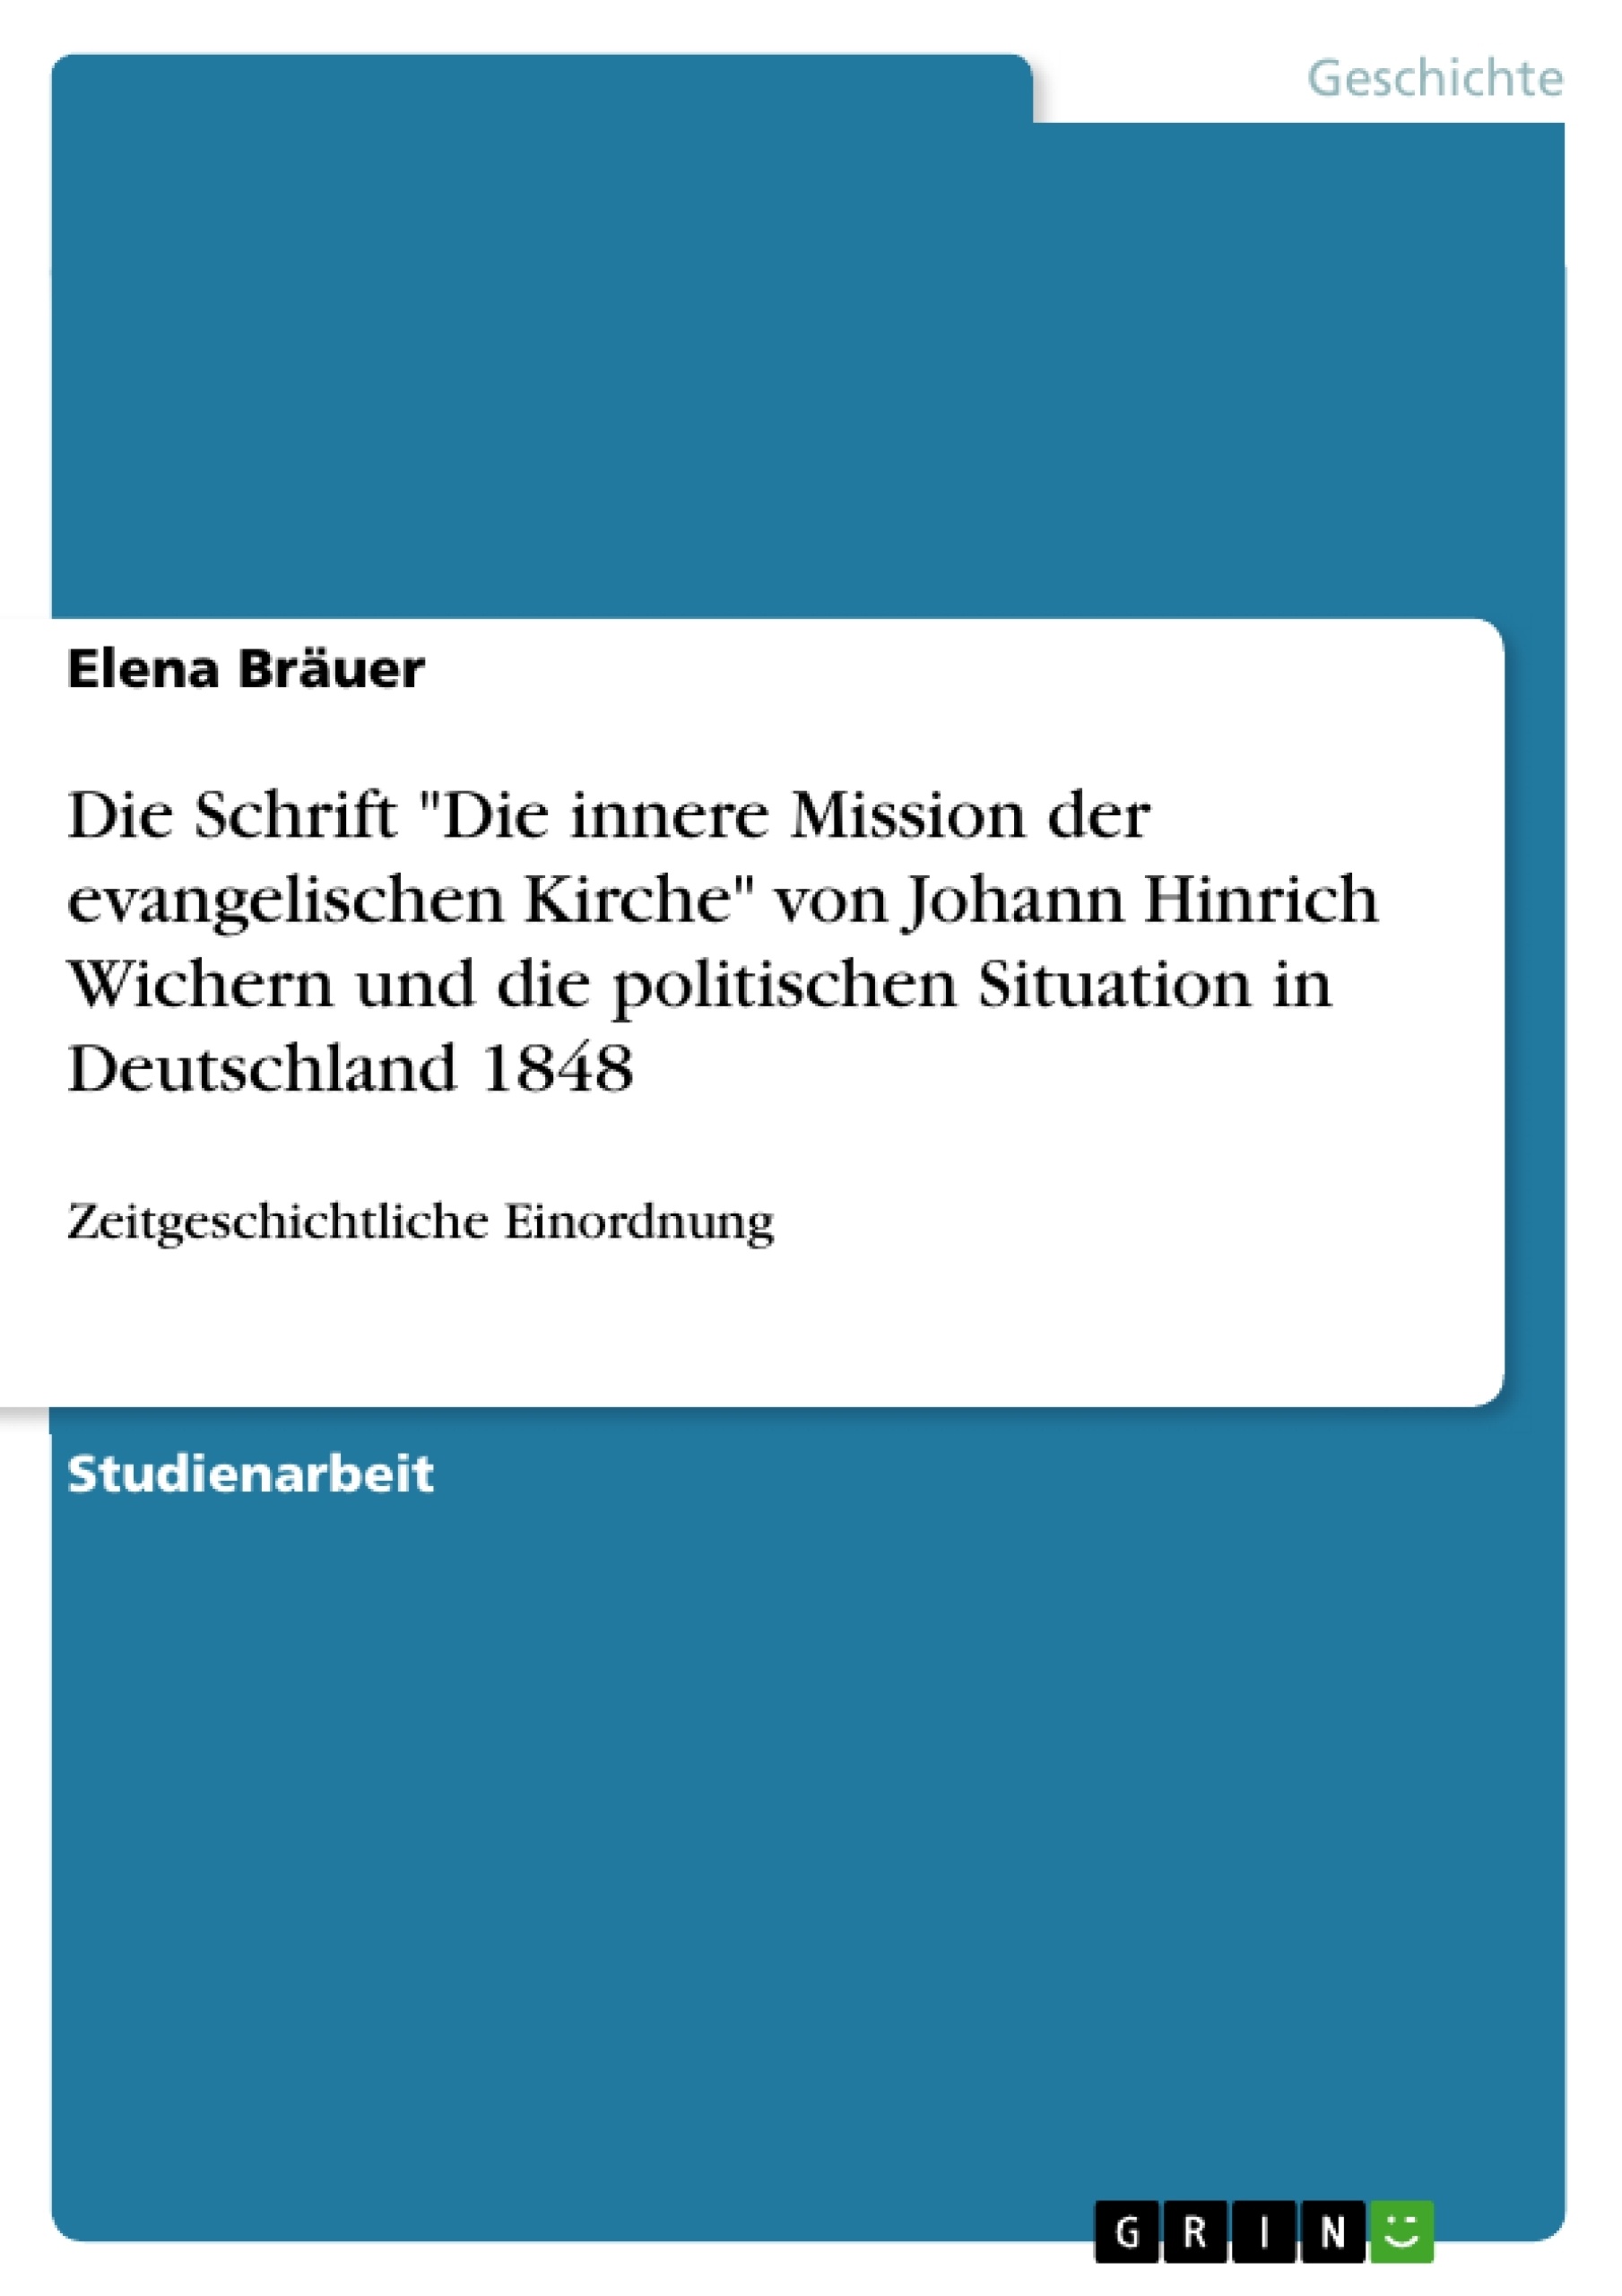 Title: Die Schrift "Die innere Mission der evangelischen Kirche" von Johann Hinrich Wichern und die politischen Situation in Deutschland 1848